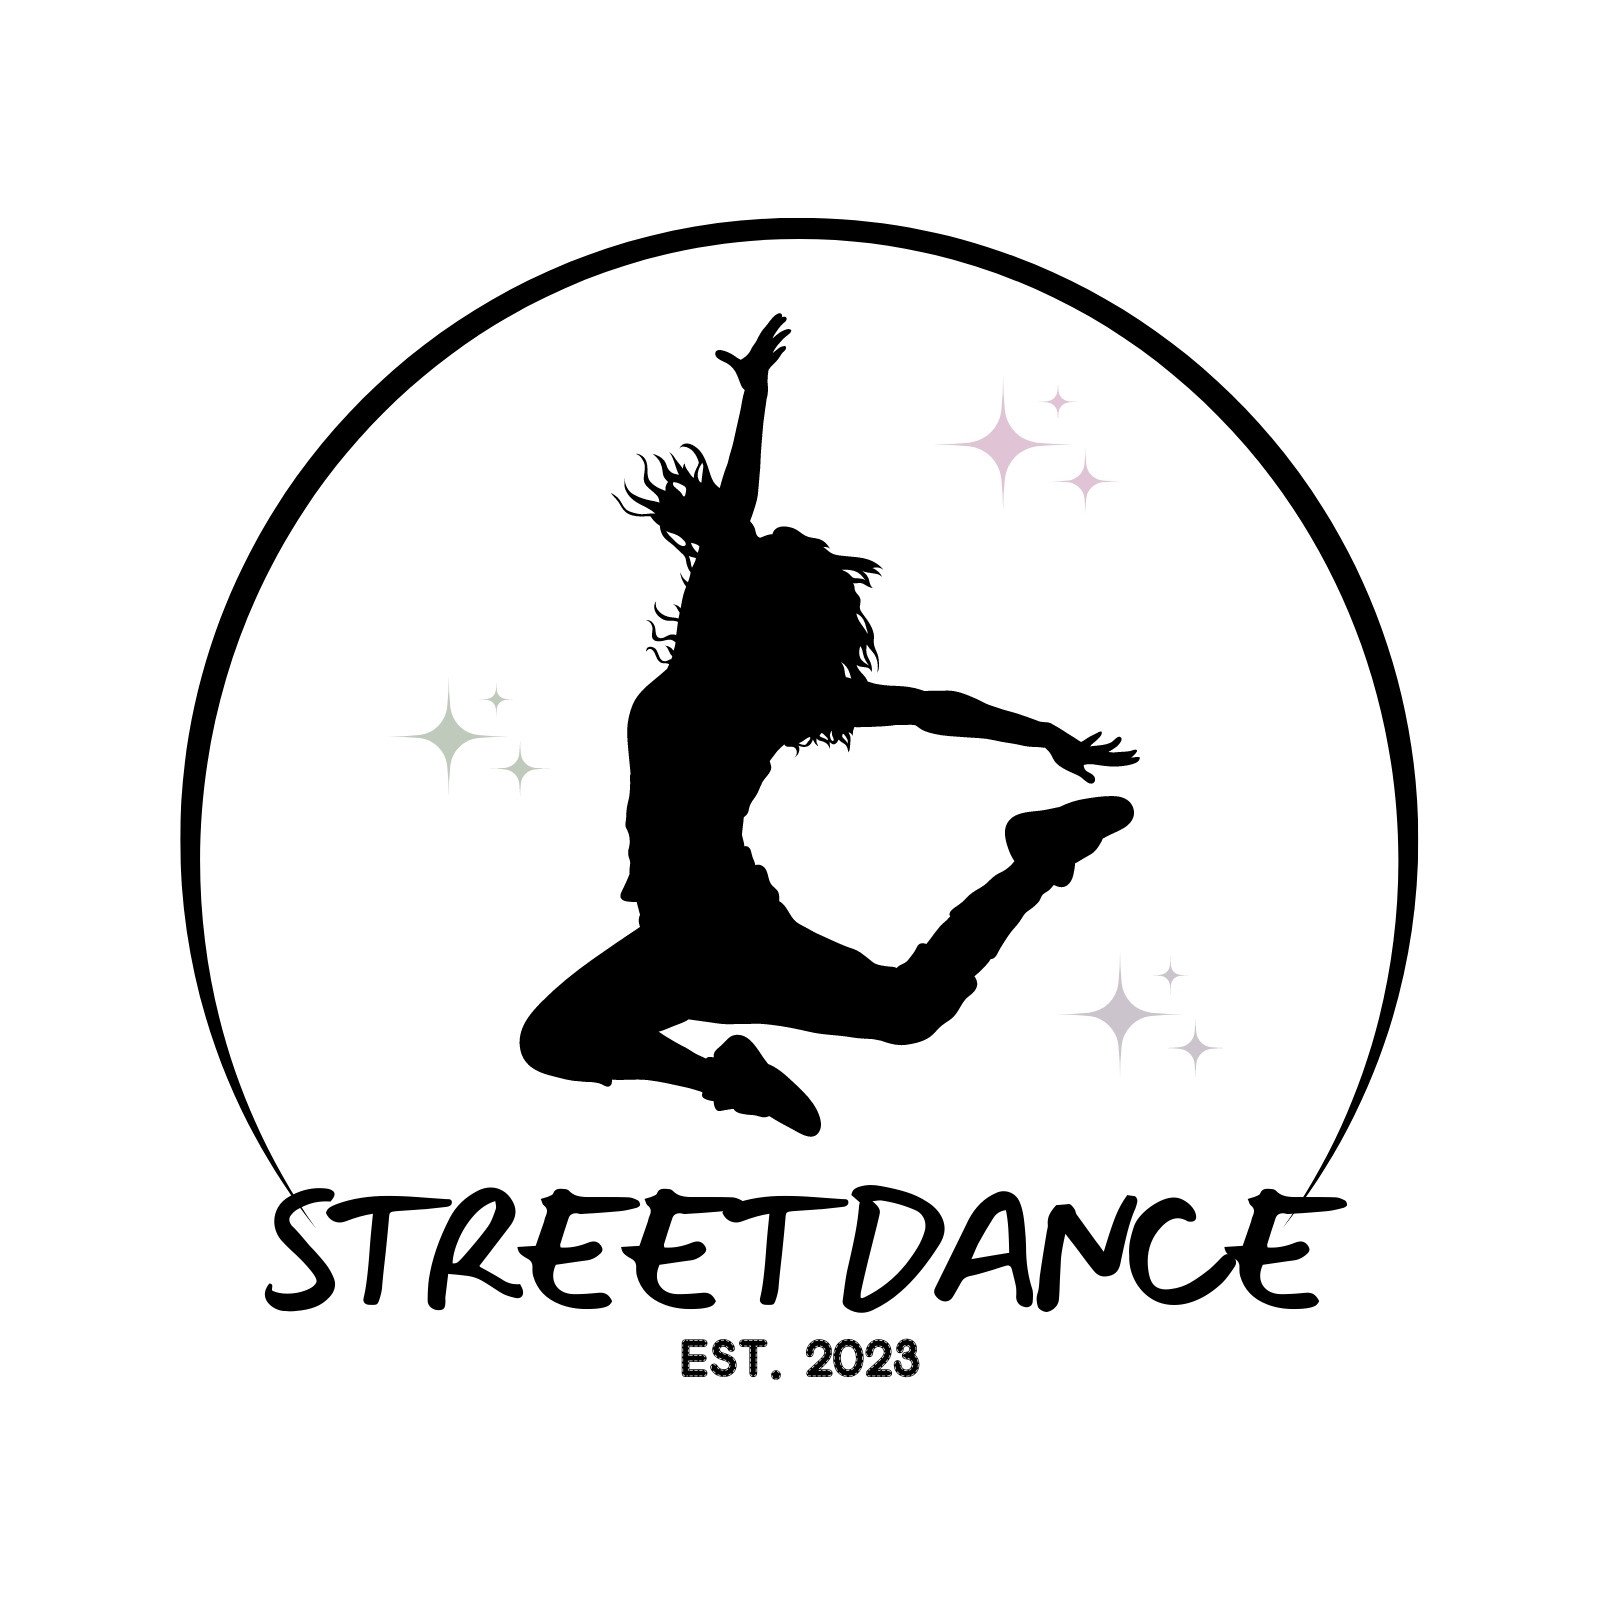 Hip hop dance logo school or studio sign Vector Image